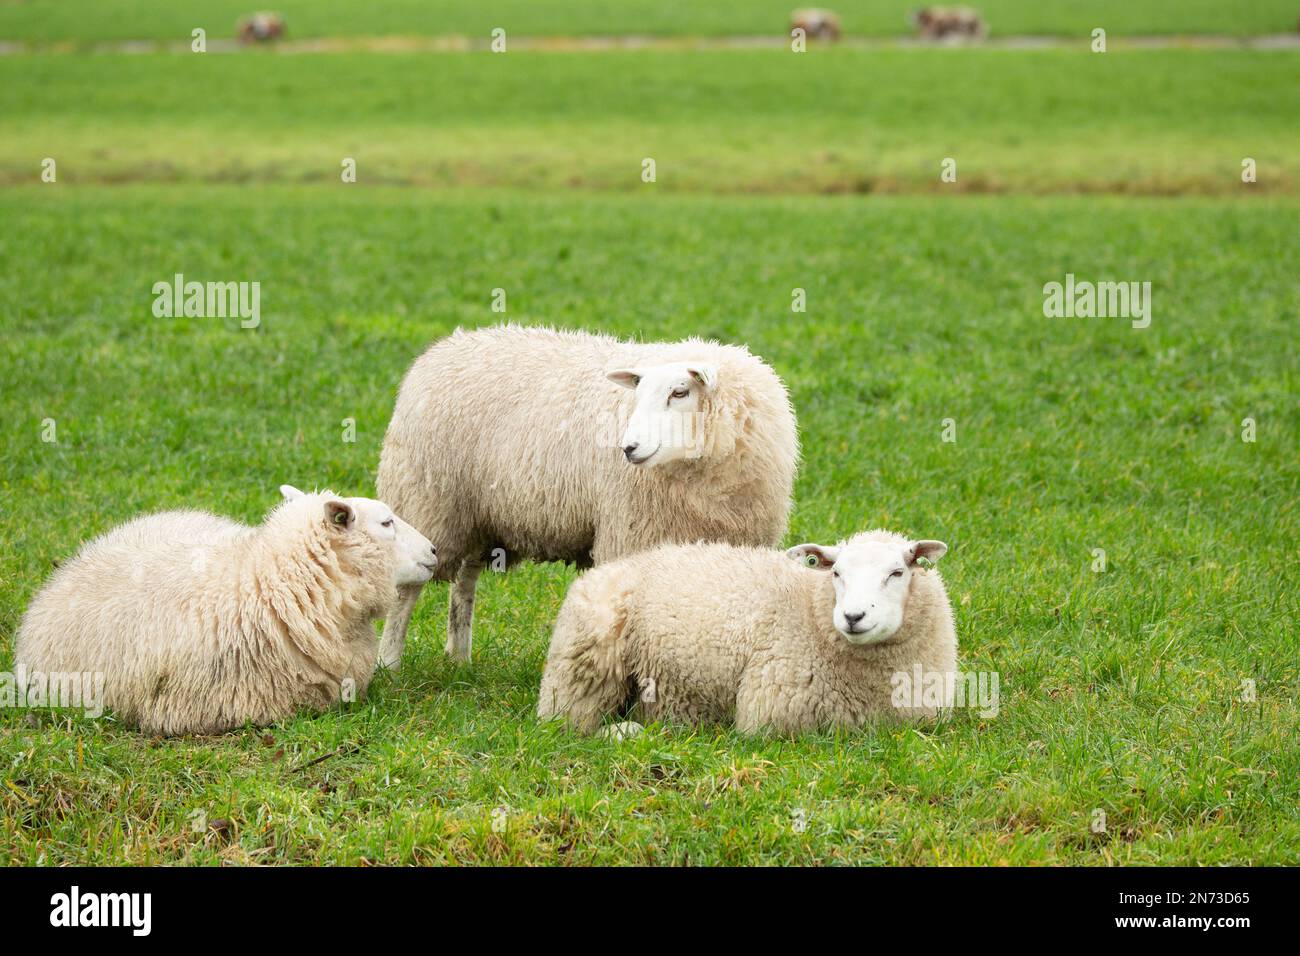 Gros plan d'un troupeau de trois moutons Texel allongé et debout dans un pré vert dans le coeur vert de la Randstad néerlandaise près d'Alphen aan den Rijn Banque D'Images